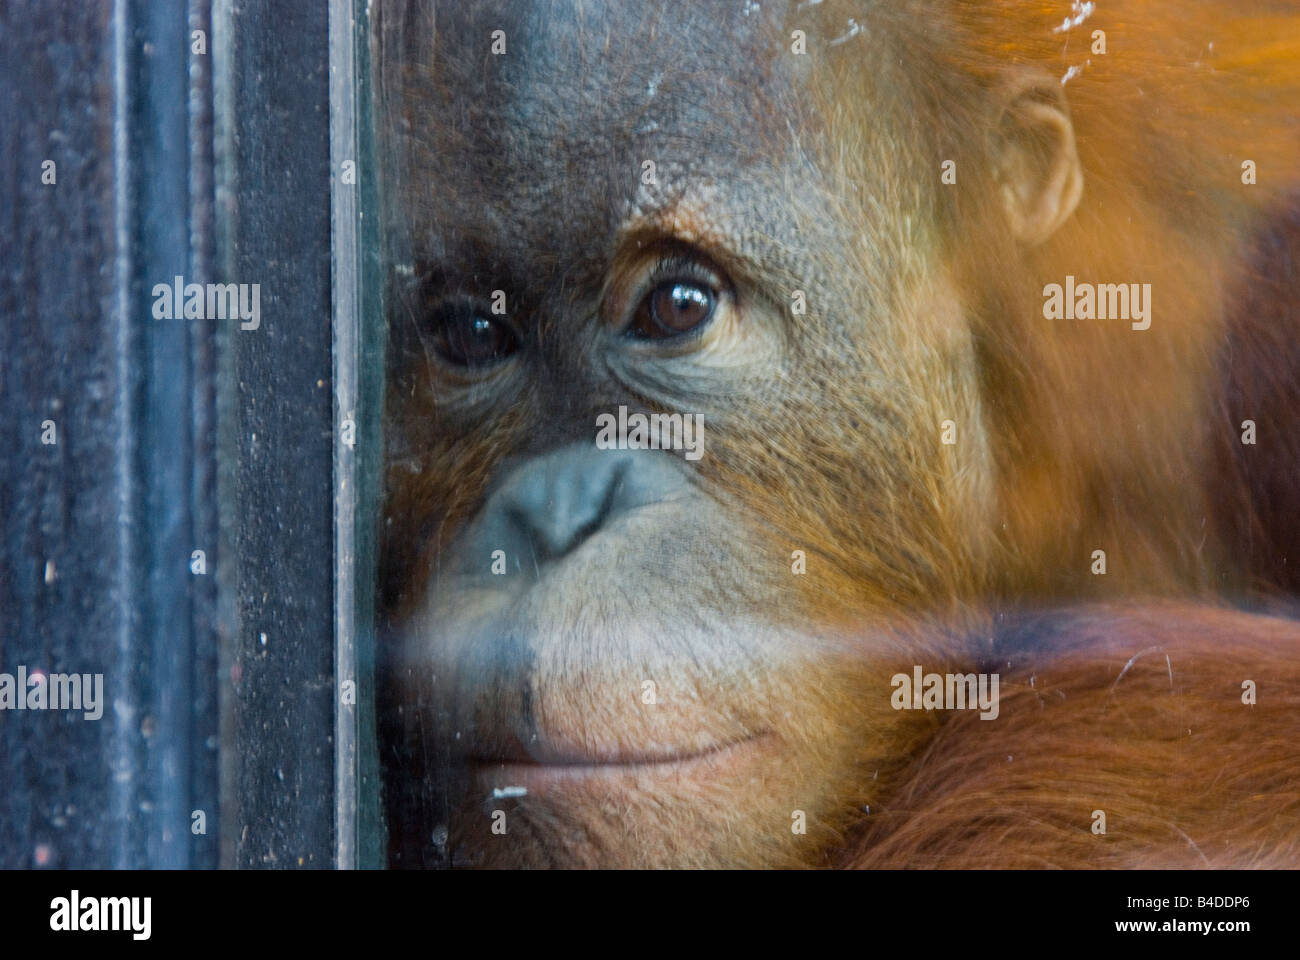 A young orangutan in Buenos Aires zoo. Stock Photo